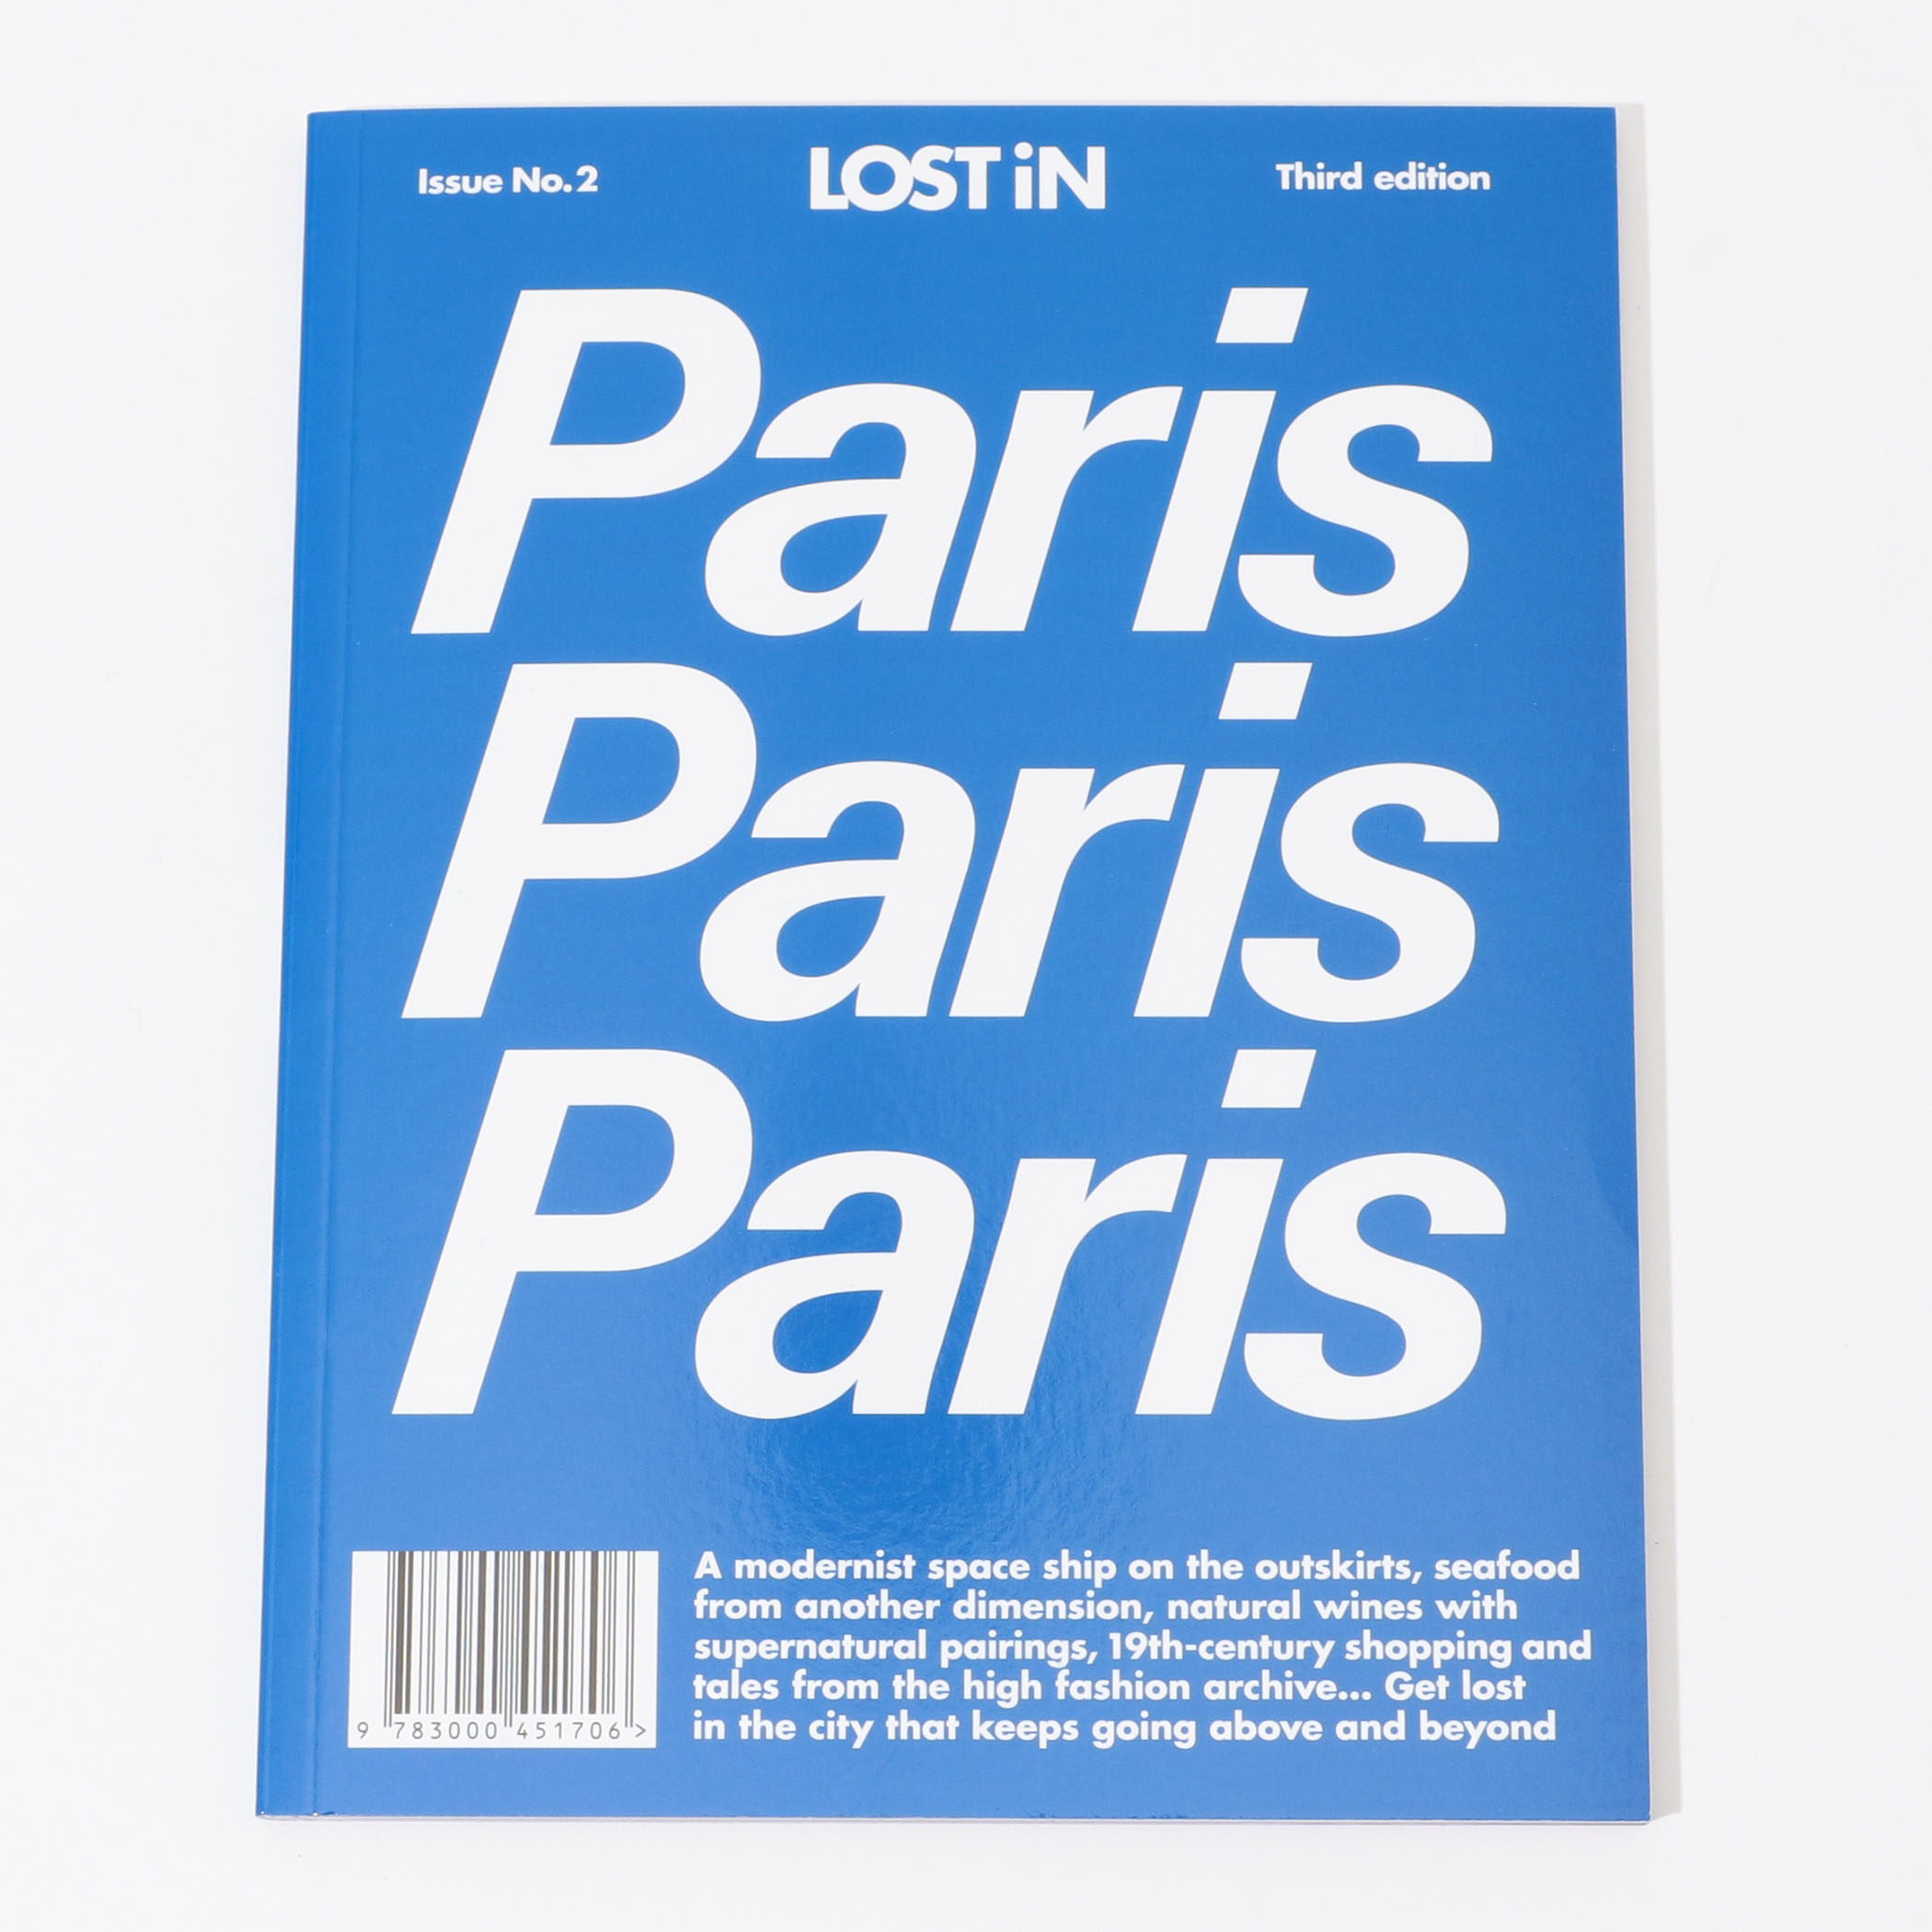 LOST IN Paris